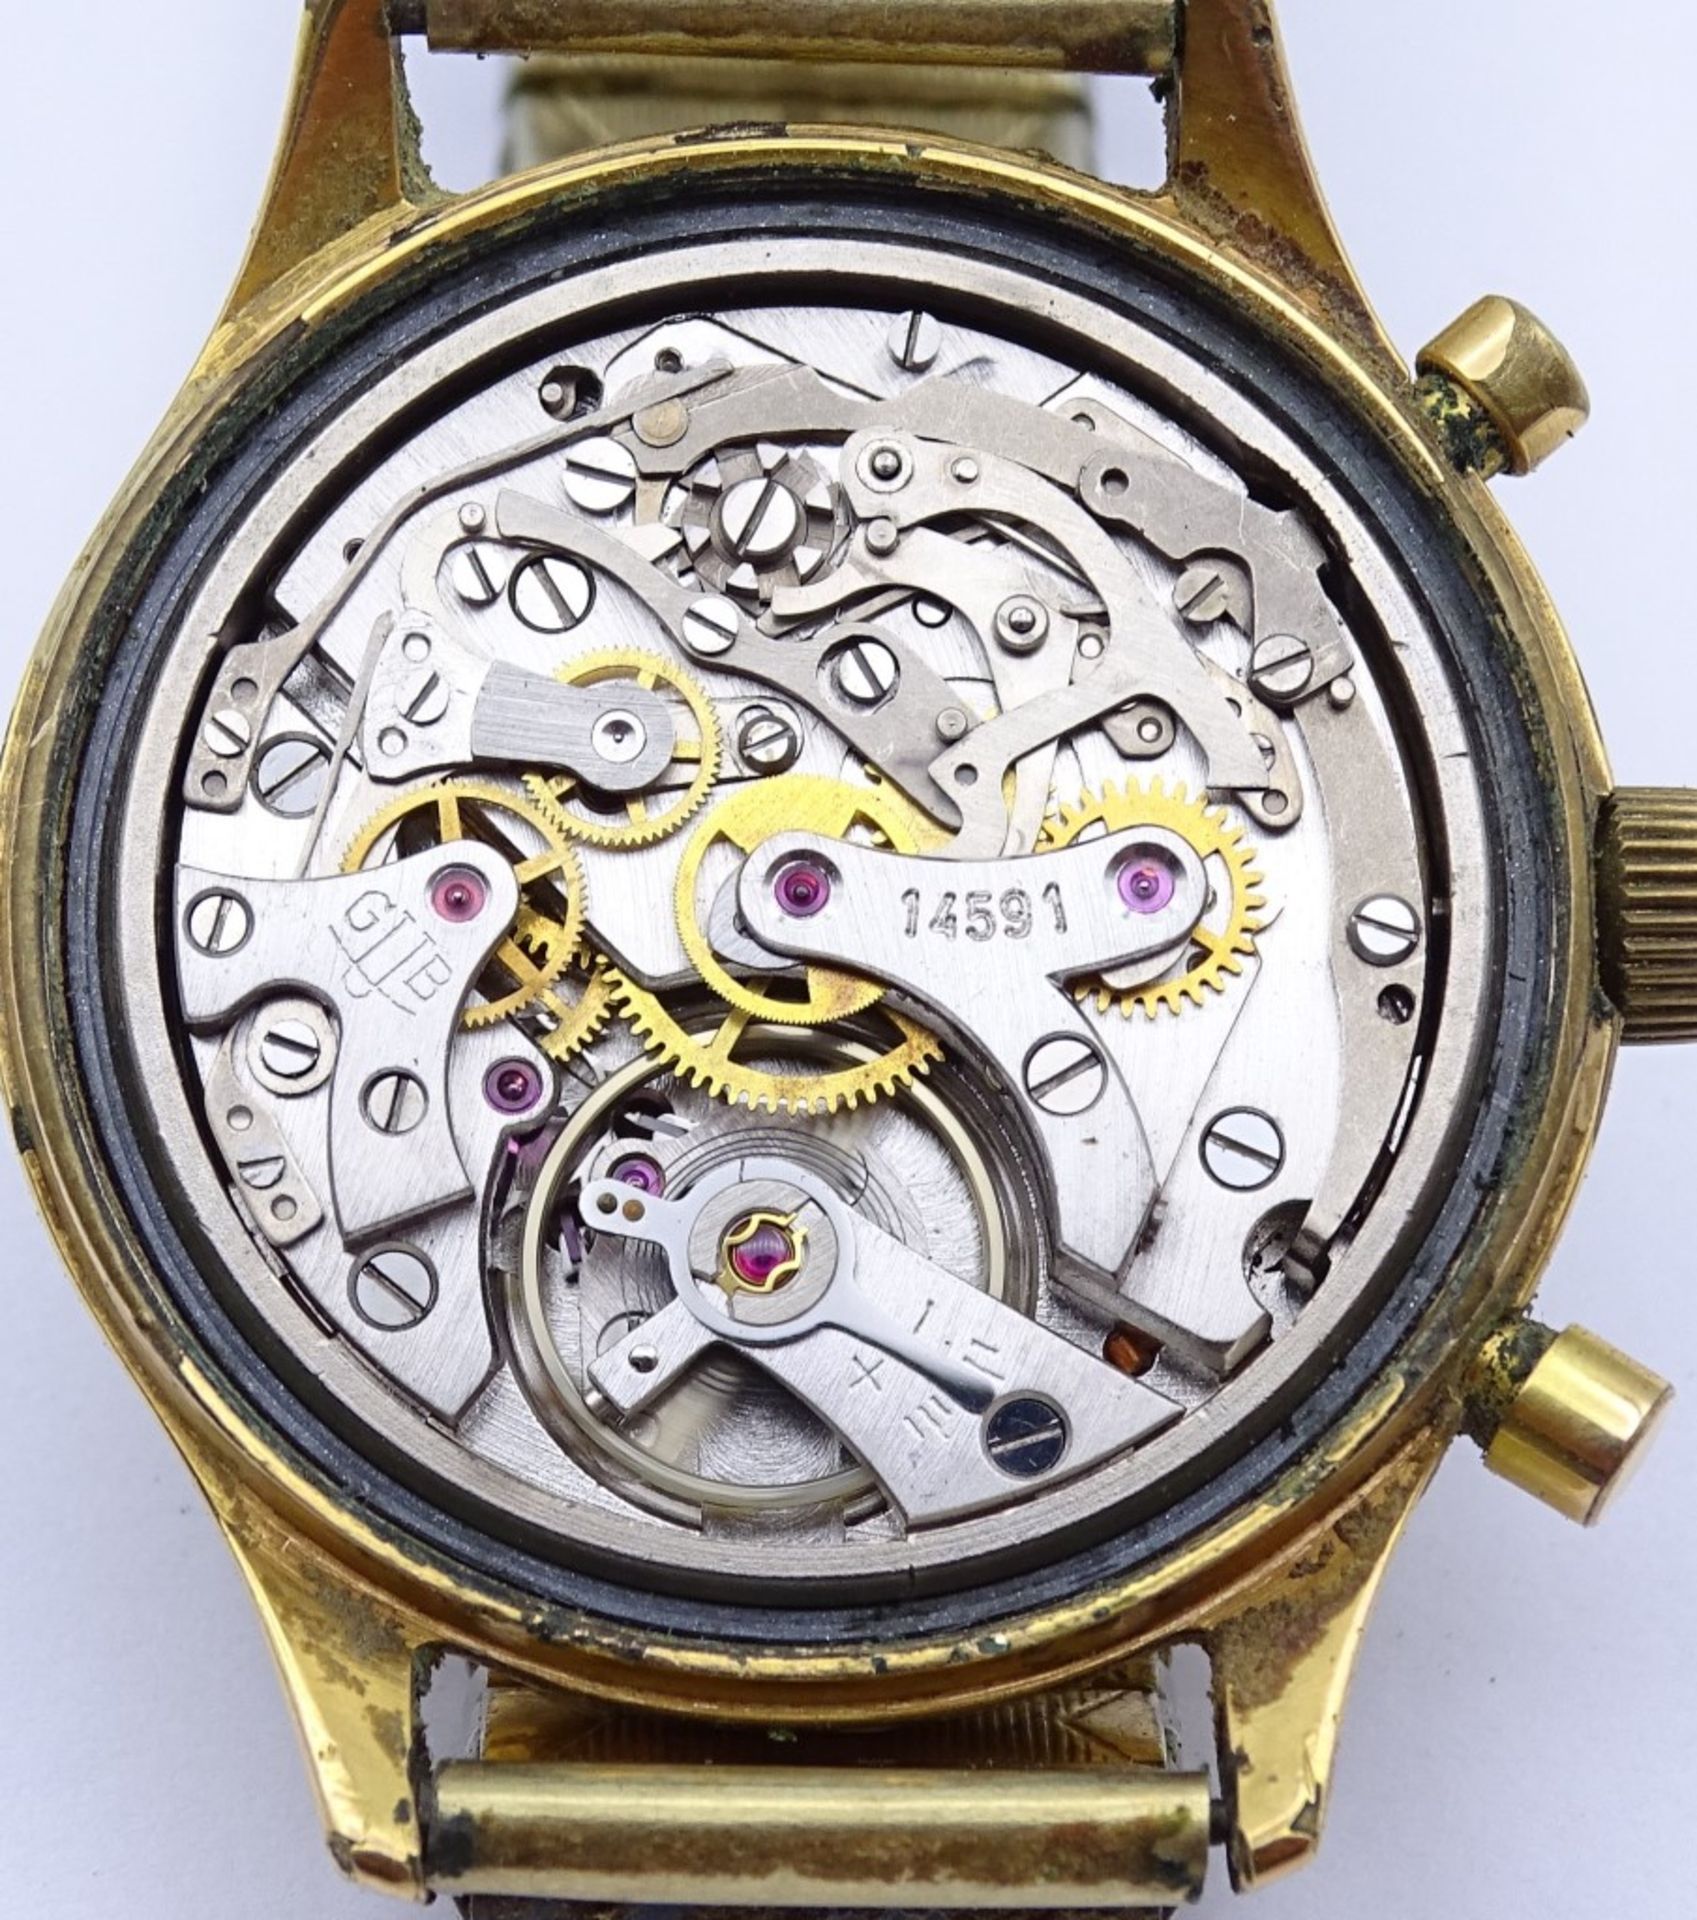 Zwei Armbanduhren "GUB",beide mechanisch,Werke laufen,vergoldet,Alters-u. Gebrauchsspuren, d-33- - Bild 5 aus 9